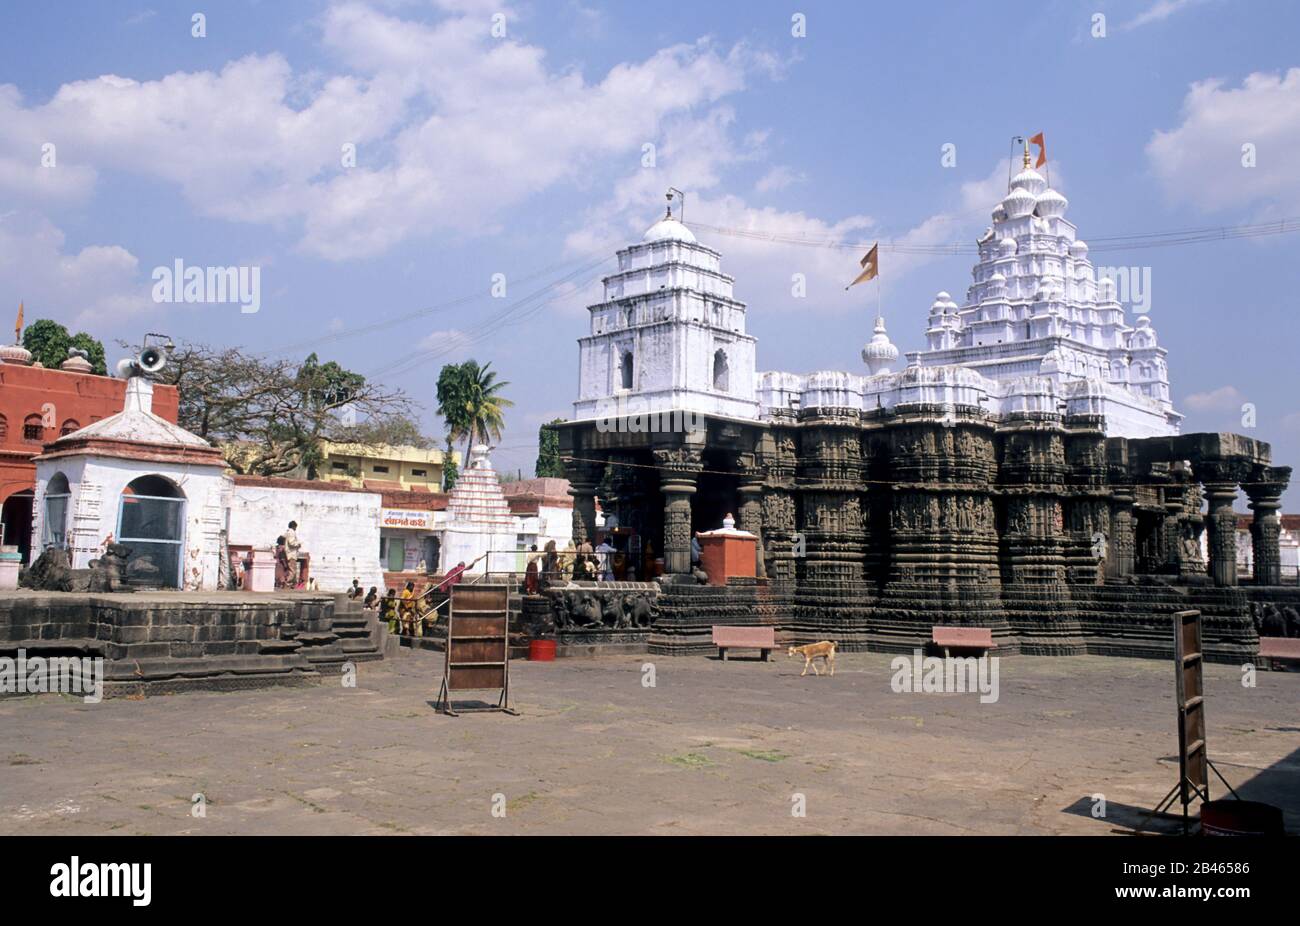 Aundha Nagnath, Shiva Temple, Aundha Naganath, Basmath, Hingoli, Marathwada, Maharashtra, India, Asia Stock Photo